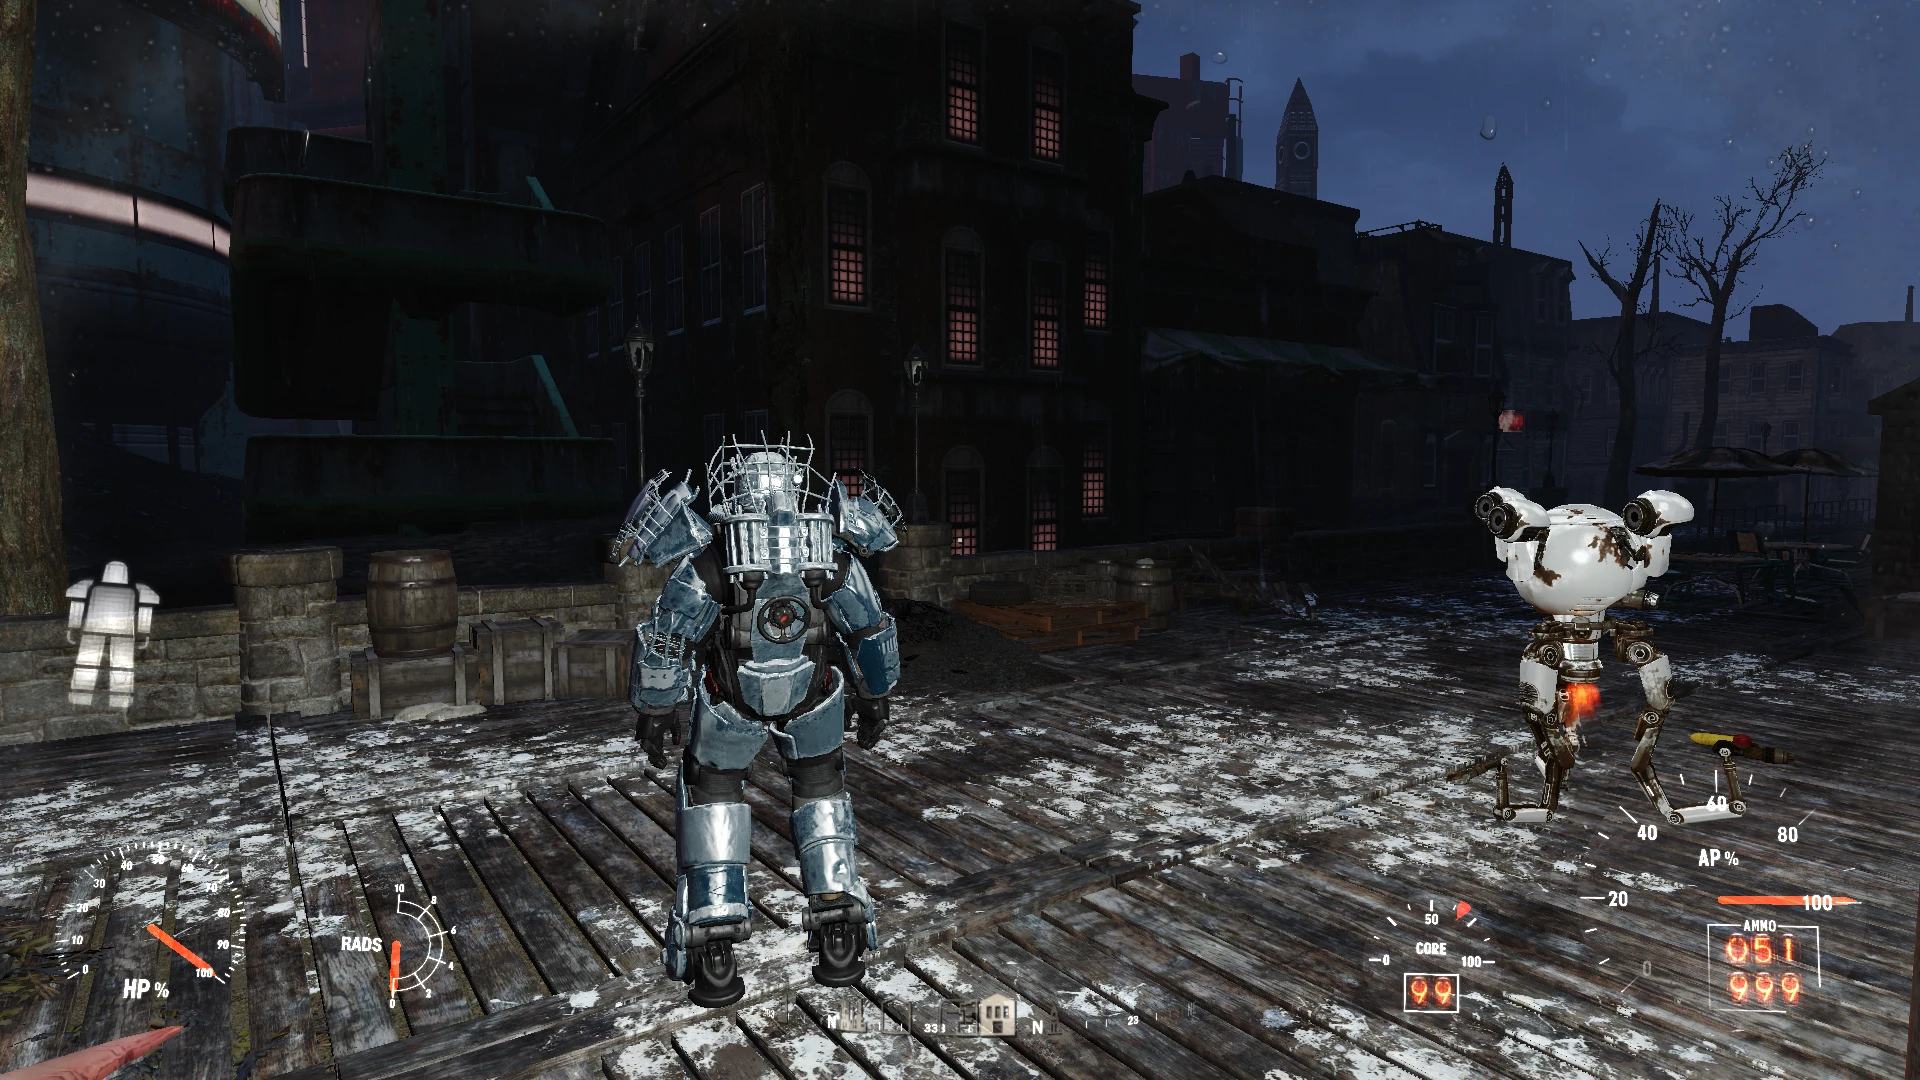 Читы на силовую броню. Fallout 4 рейдерская броня. Рейдерская силовая броня. Fallout 4 Raider Power Armor. Рейдерская силовая броня в Fallout 4.